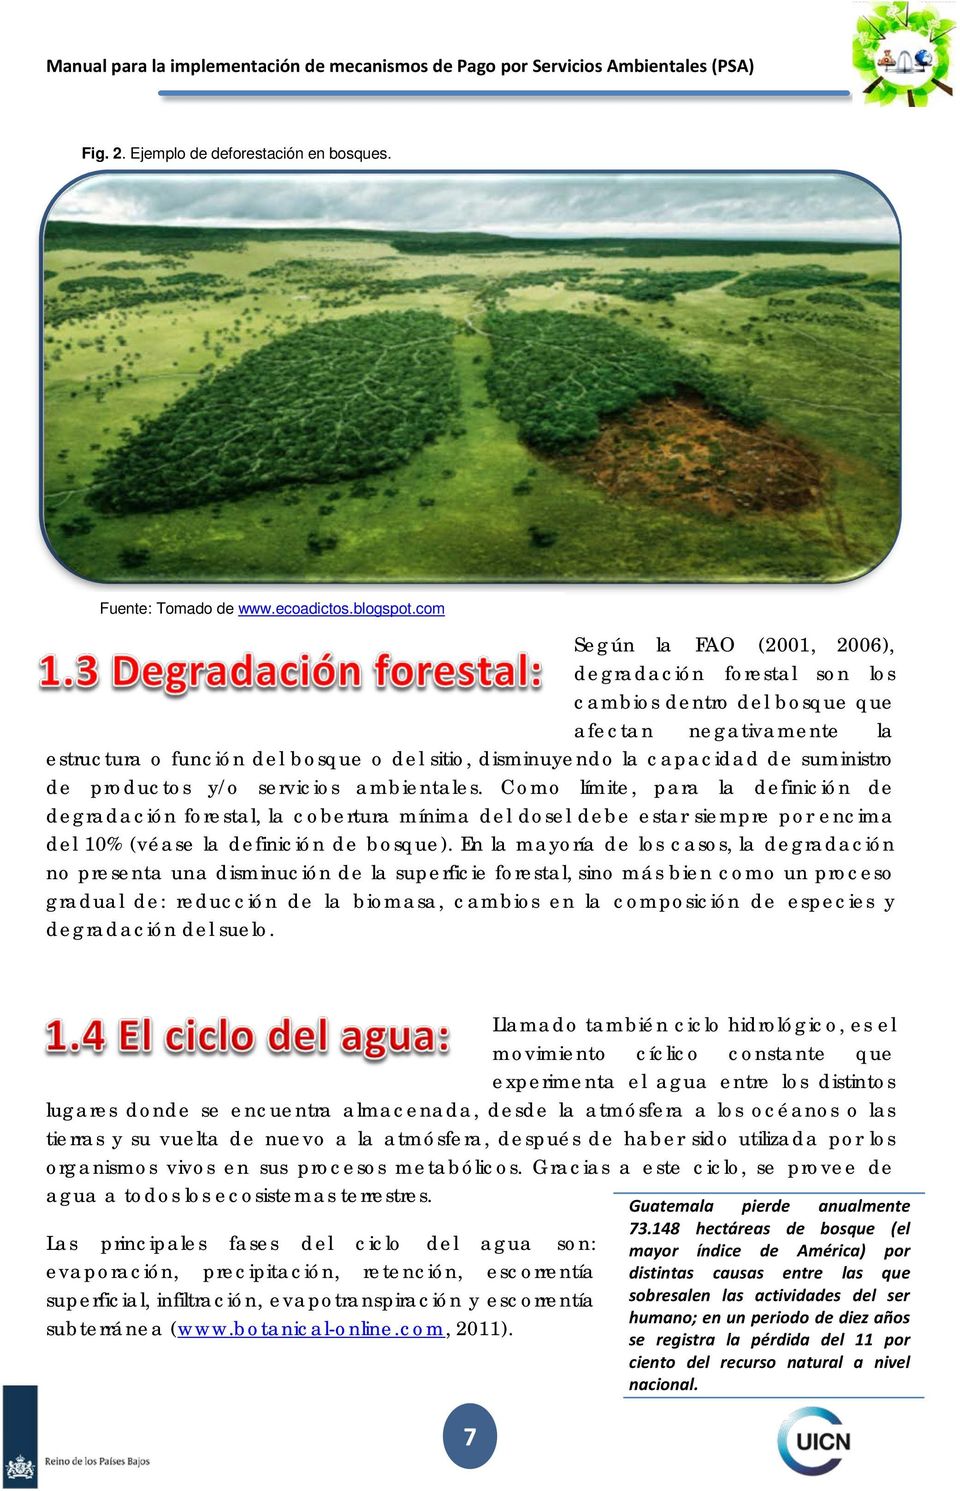 de productos y/o servicios ambientales. Como límite, para la definición de degradación forestal, la cobertura mínima del dosel debe estar siempre por encima del 10% (véase la definición de bosque).